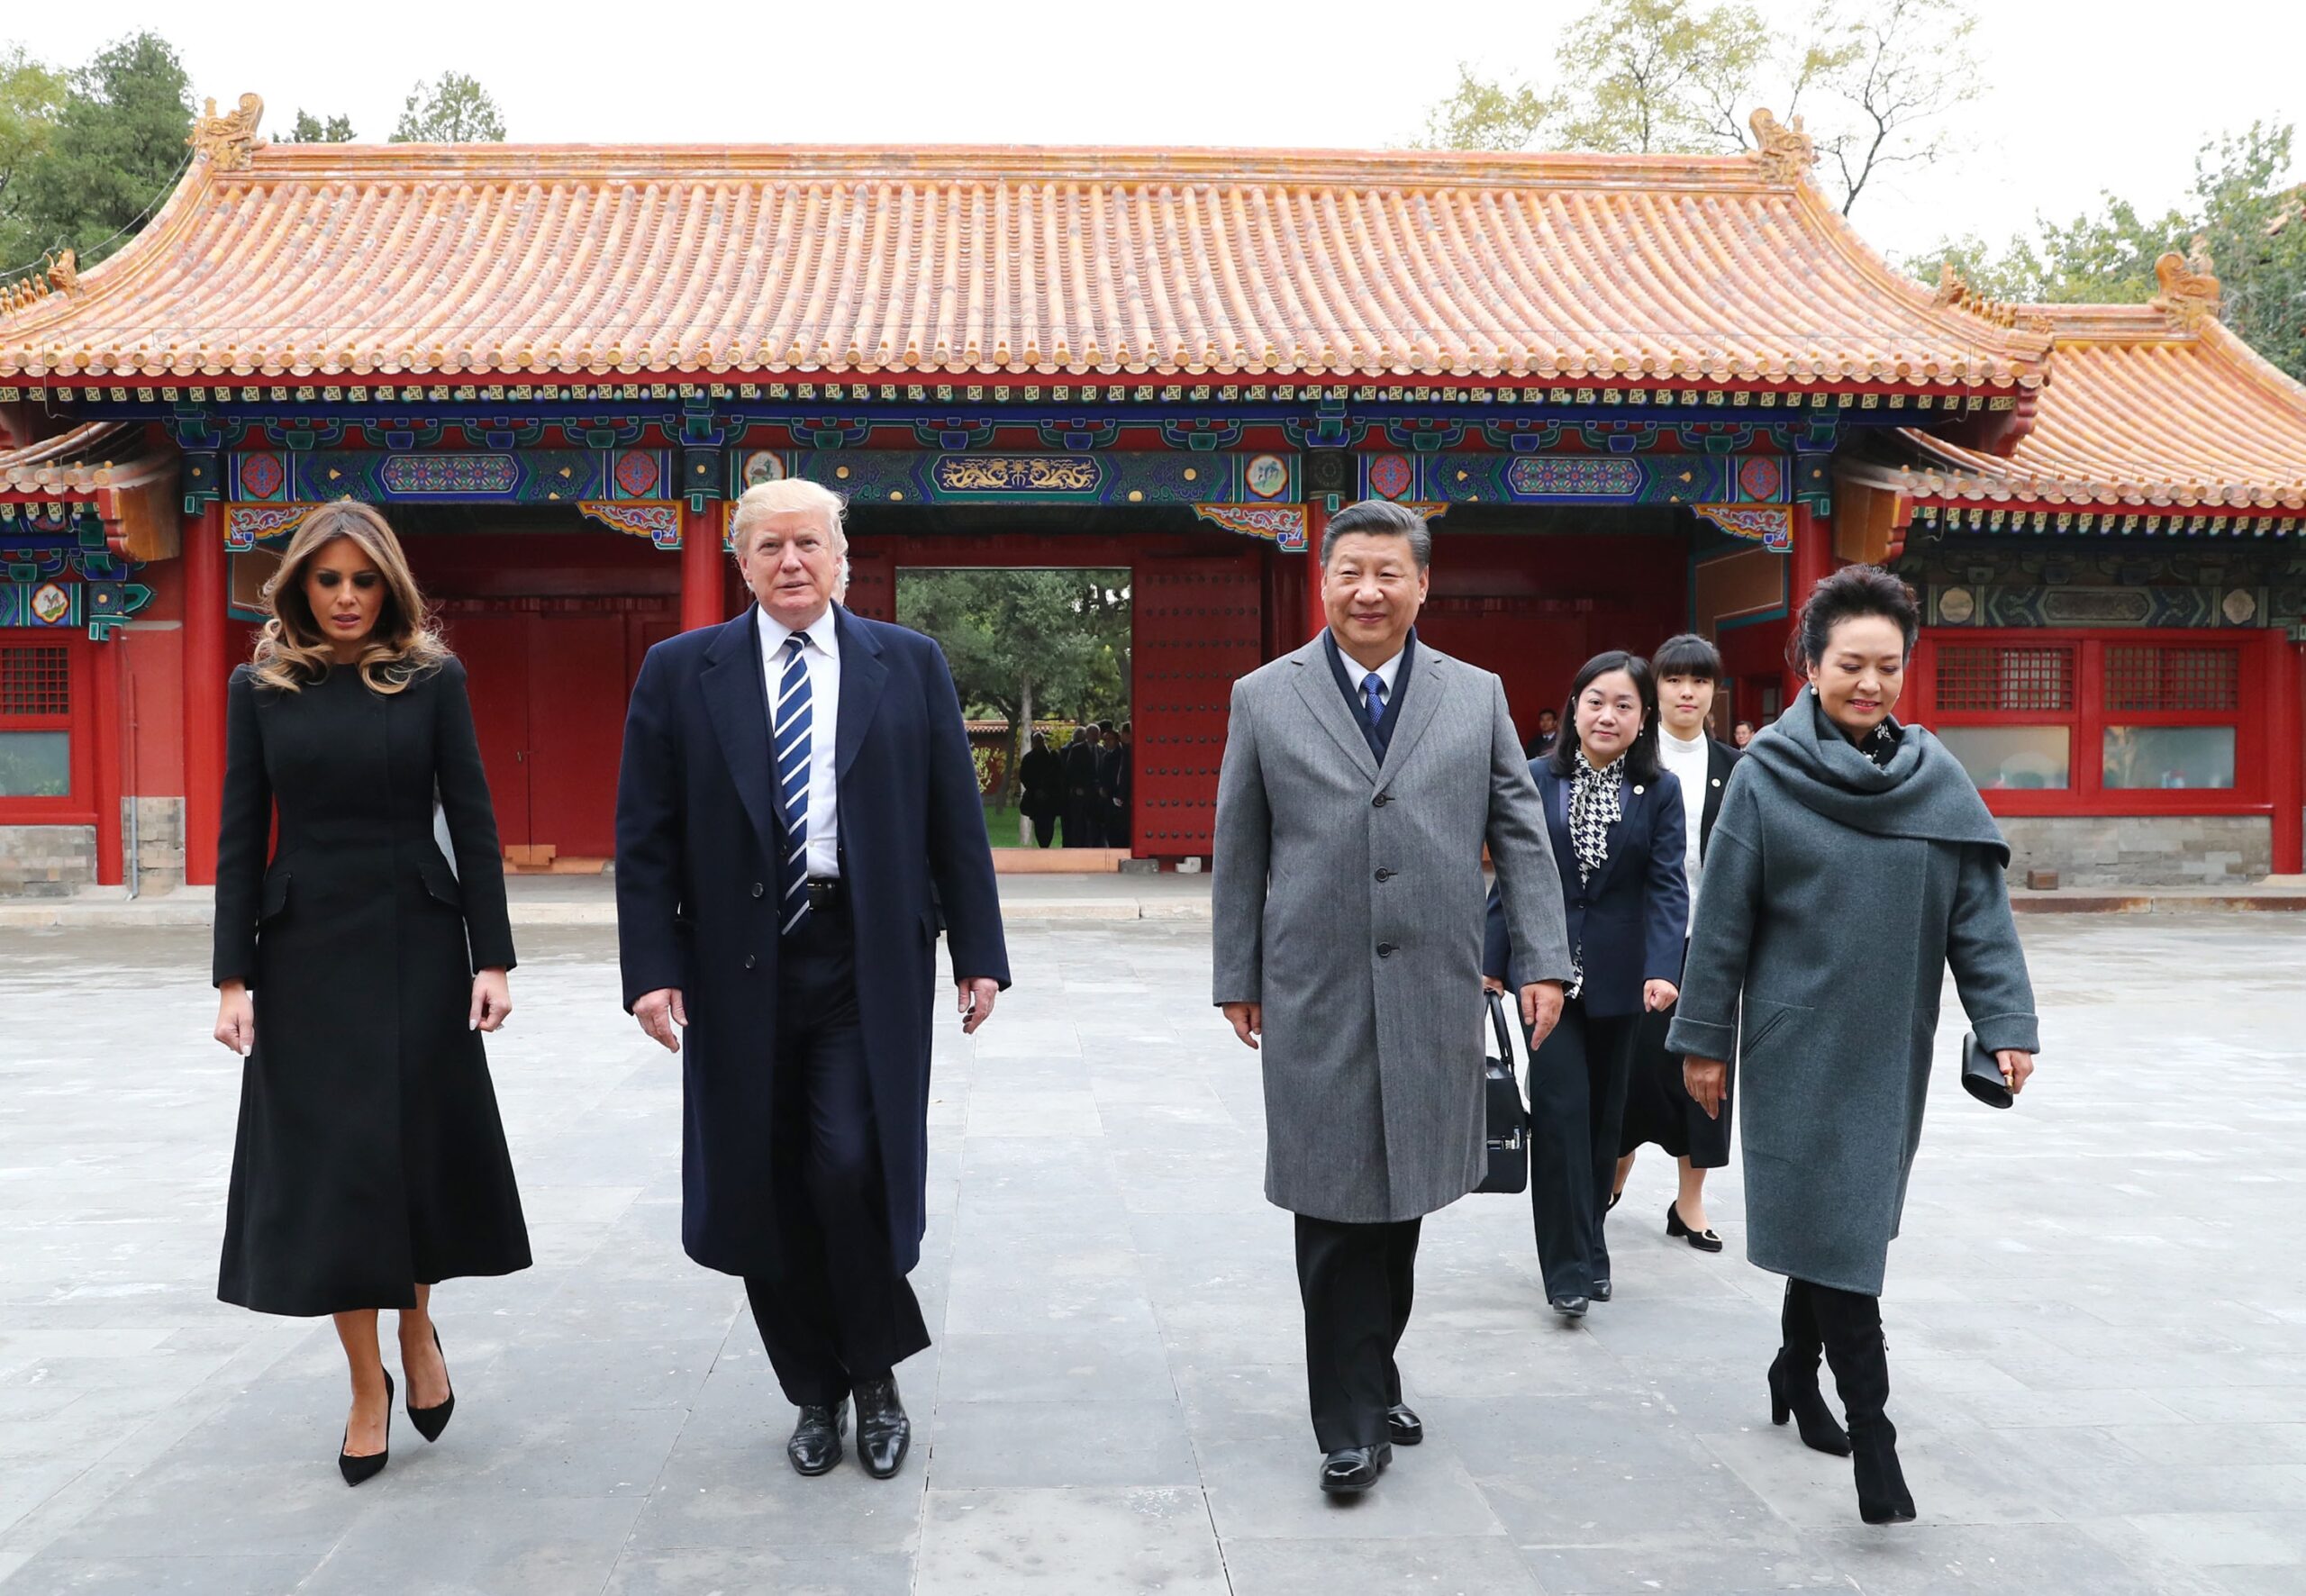 Donald Trump en zijn vrouw Melania tijdens een bezoek aan China in 2017.  Foto: Xie Huanchi Xinhua / eyevine